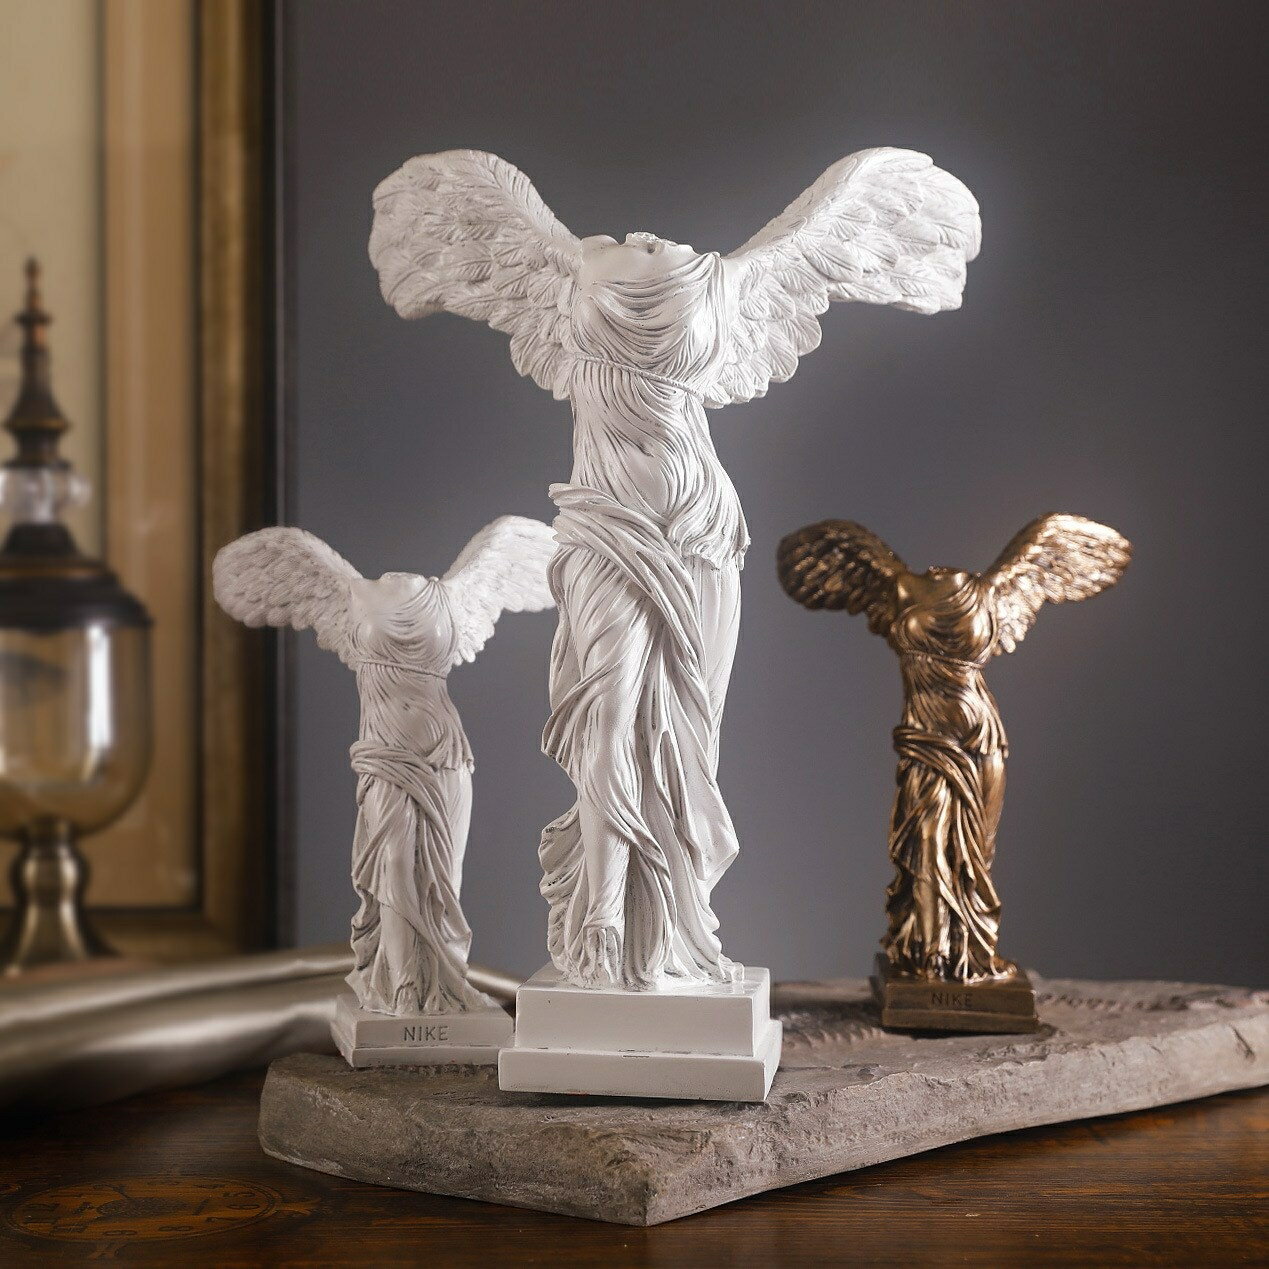 樹脂工藝品創意擺件勝利女神雕塑斷臂維納斯石膏模型素描人物塑像